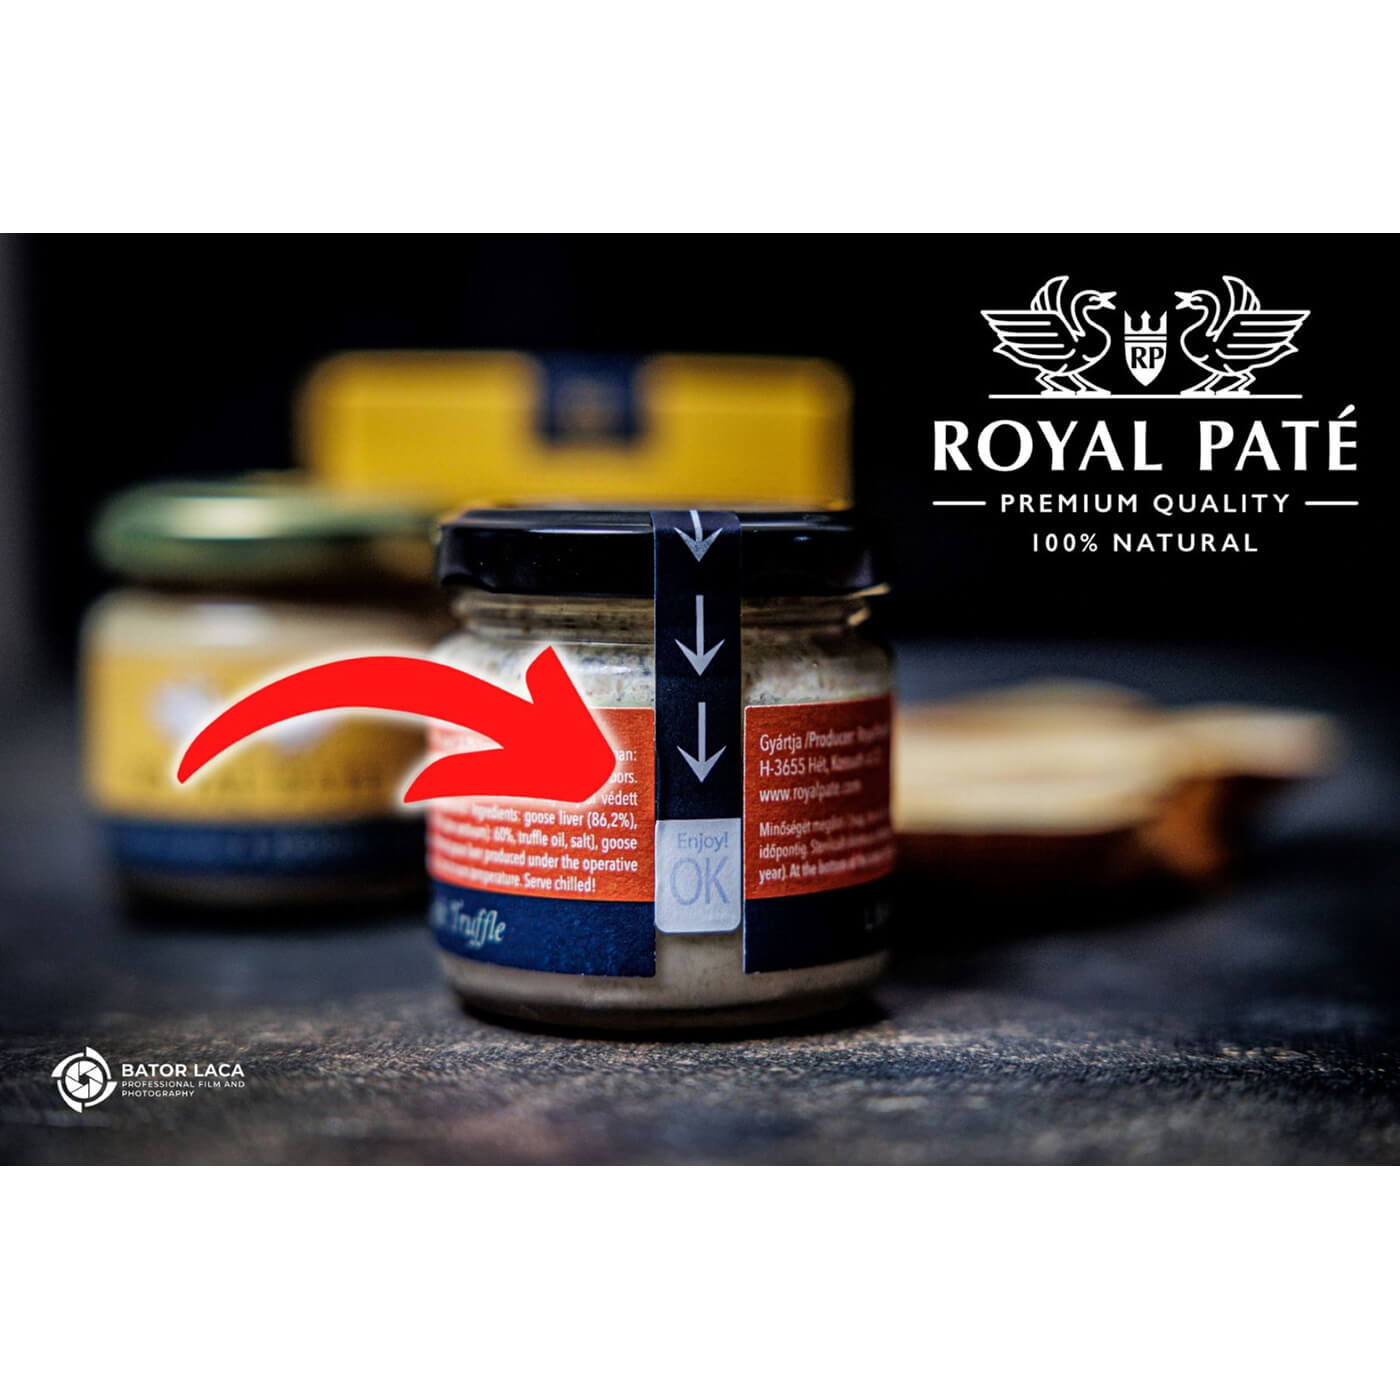 Mousse de foie gras cu miere de castane 60% ficat de gasca Royal Pate 70g